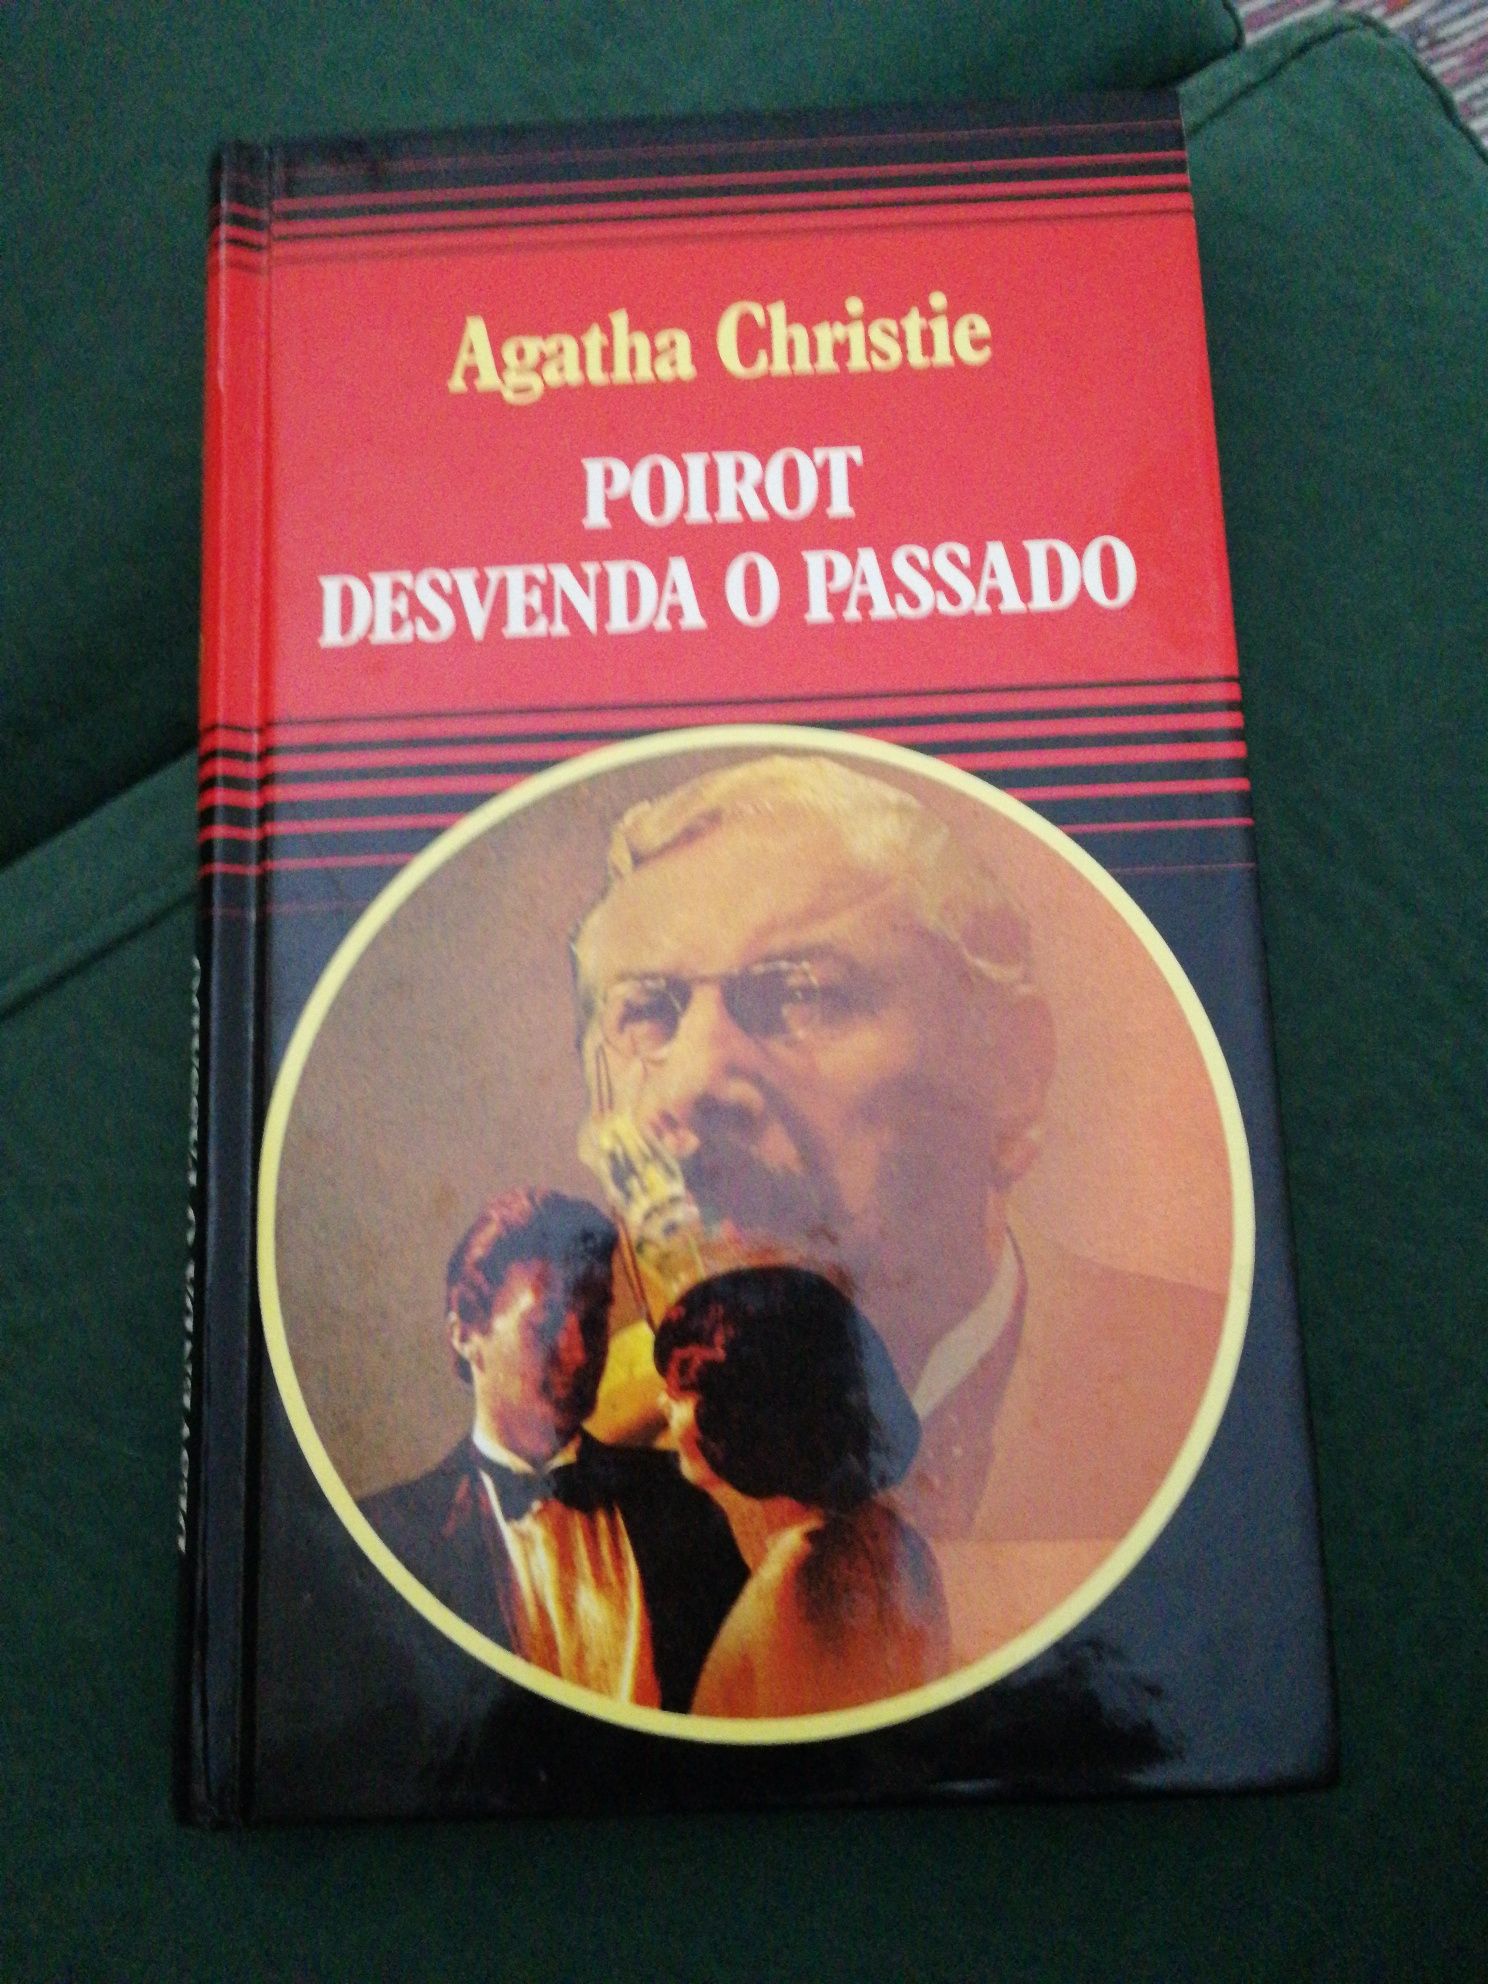 Livro "Poirot Desvenda o Passado" de Agatha Christie